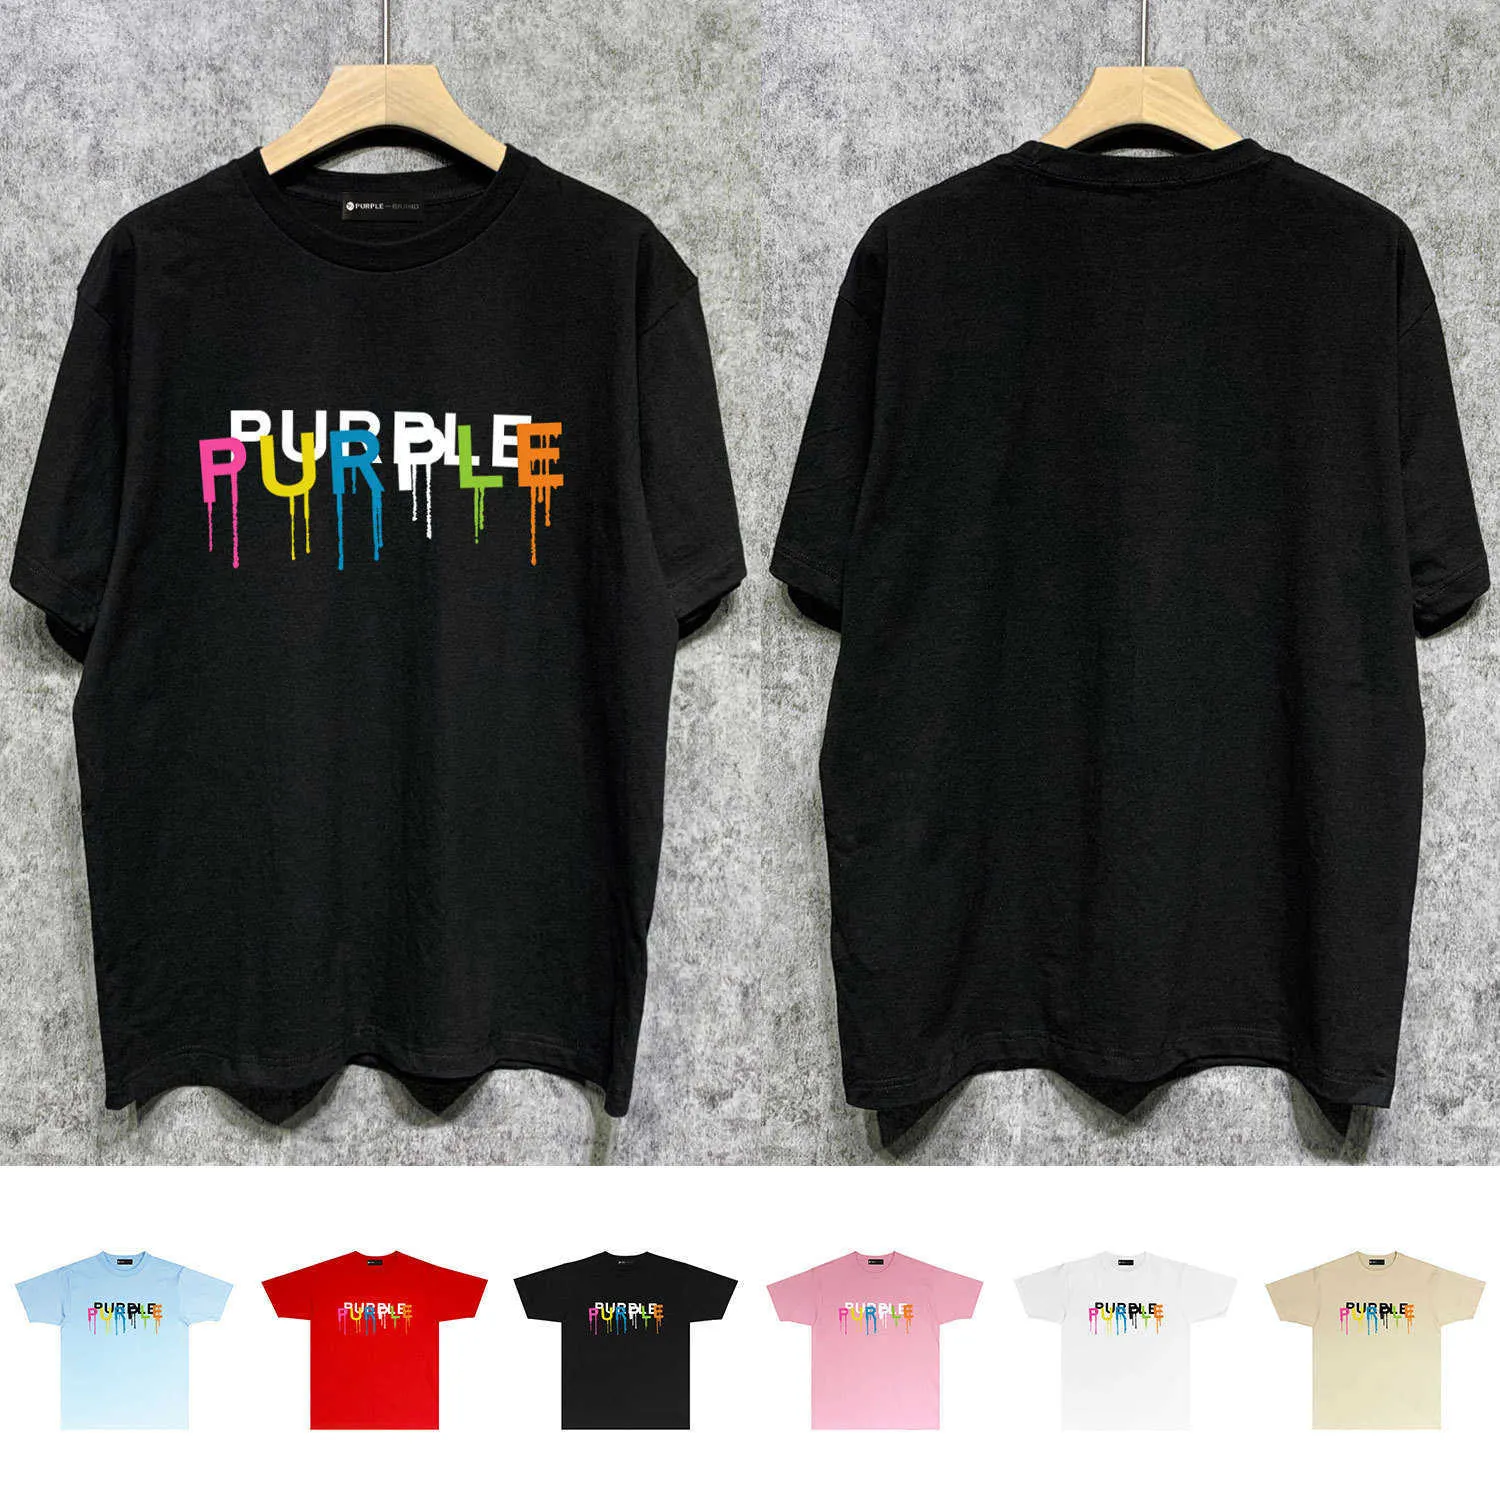 Long term trendy brand PURPLE BRAND T SHIRT short sleeved T-shirt shirt7D64